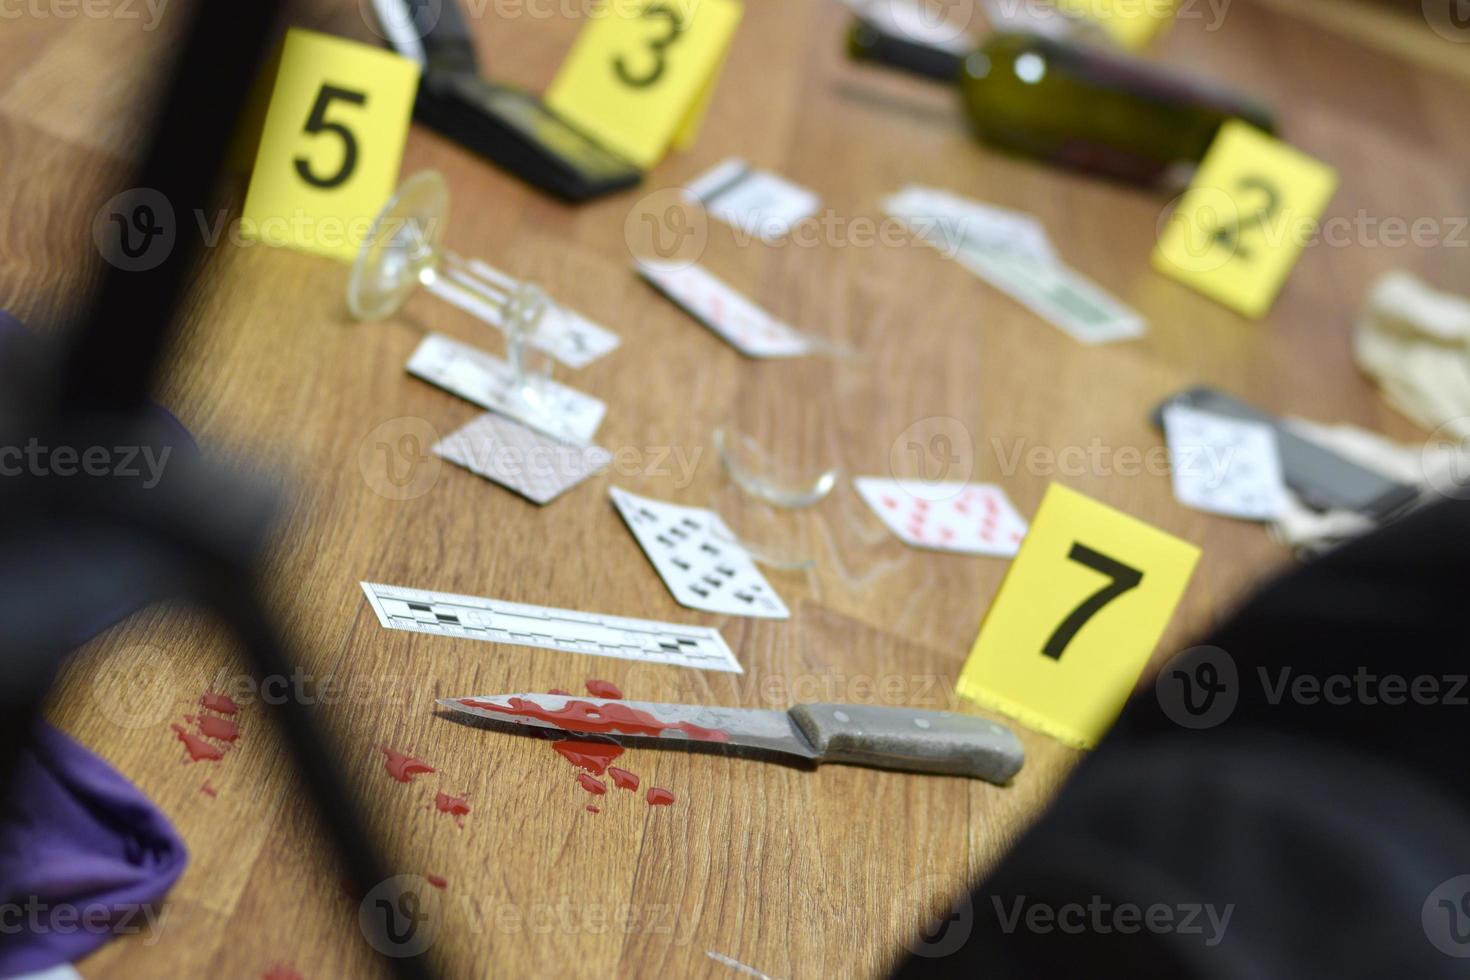 investigación de la escena del crimen - numeración de evidencias después del asesinato en el apartamento. un montón de naipes, billetera y botella de vino como evidencia foto